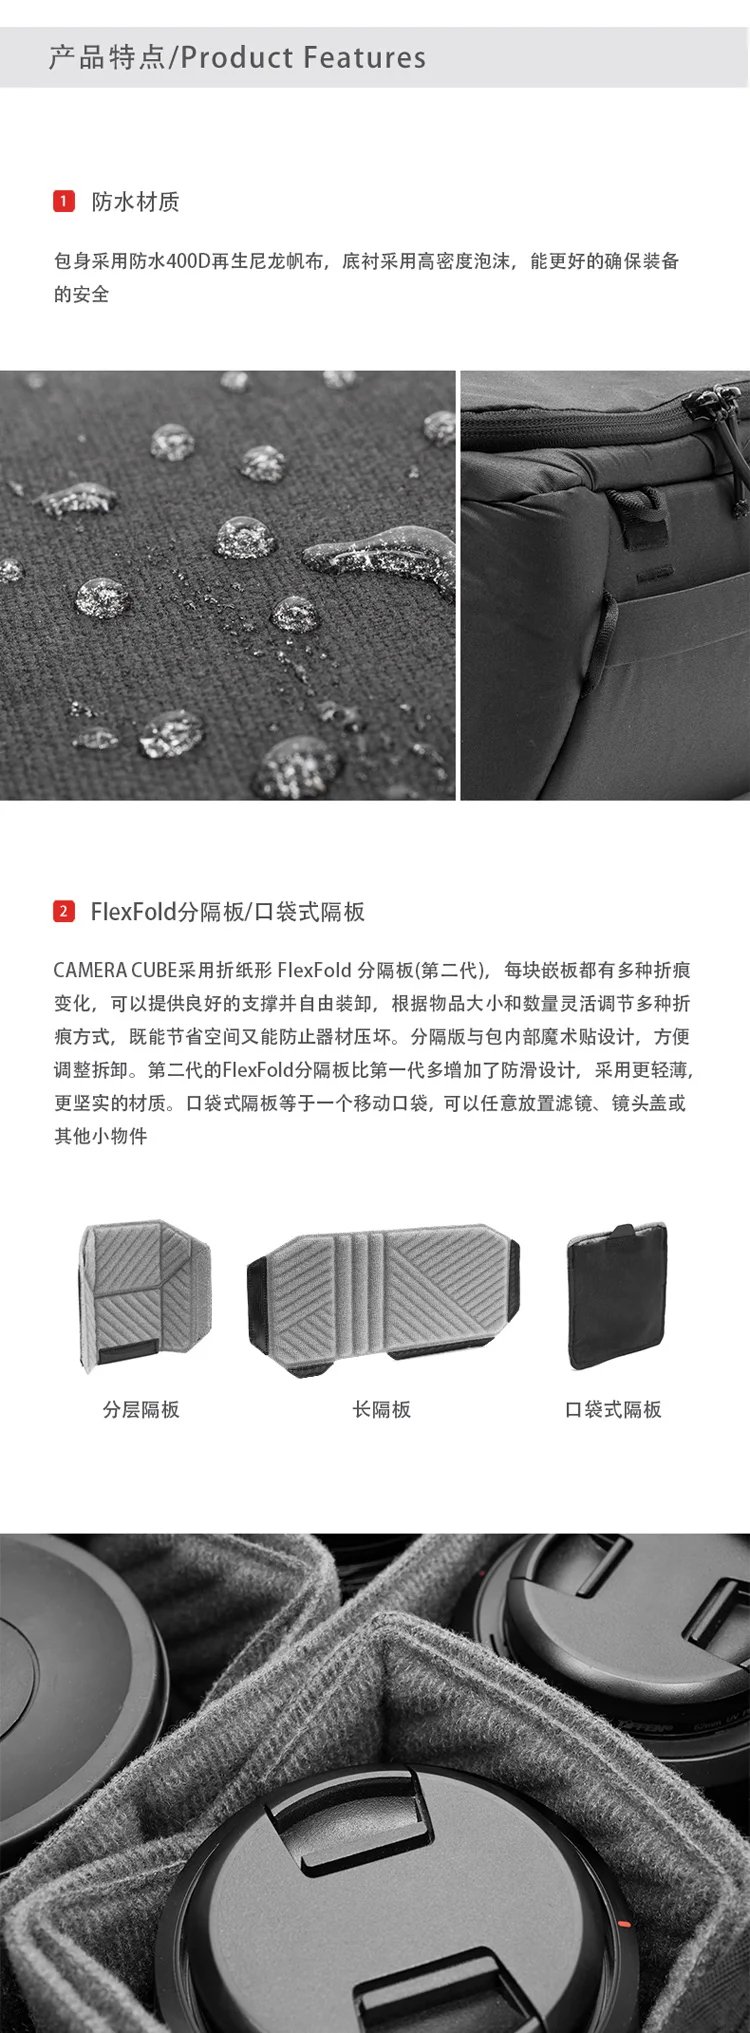 Пиковый дизайн камеры кубики диагональная посылка всепогодный прочный защитный слой утолщение для camon nikon sony камеры и объектива